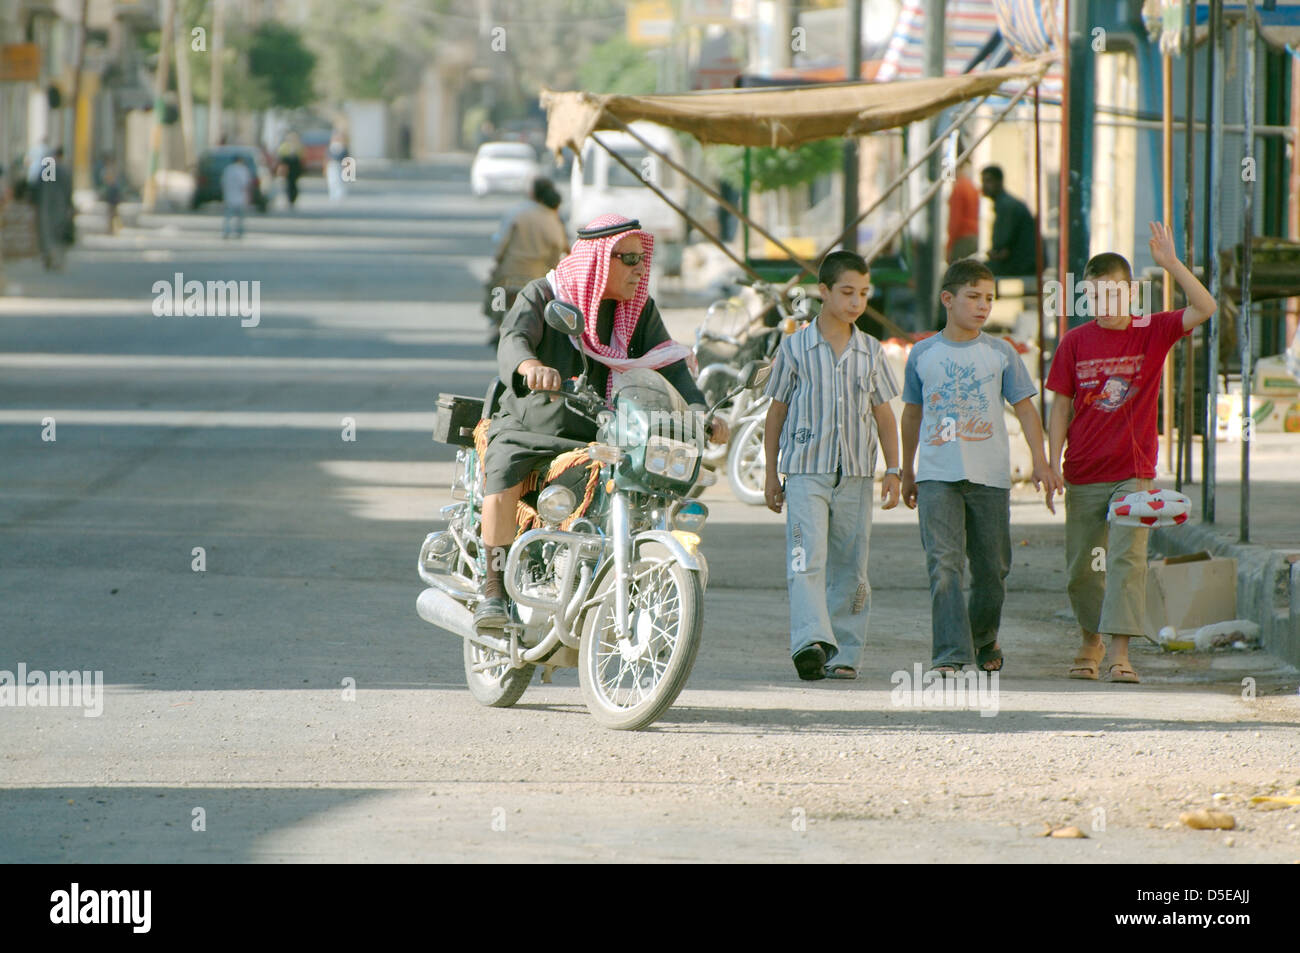 motorcyclist riding down the street, Palmyra, Syria  Stock Photo